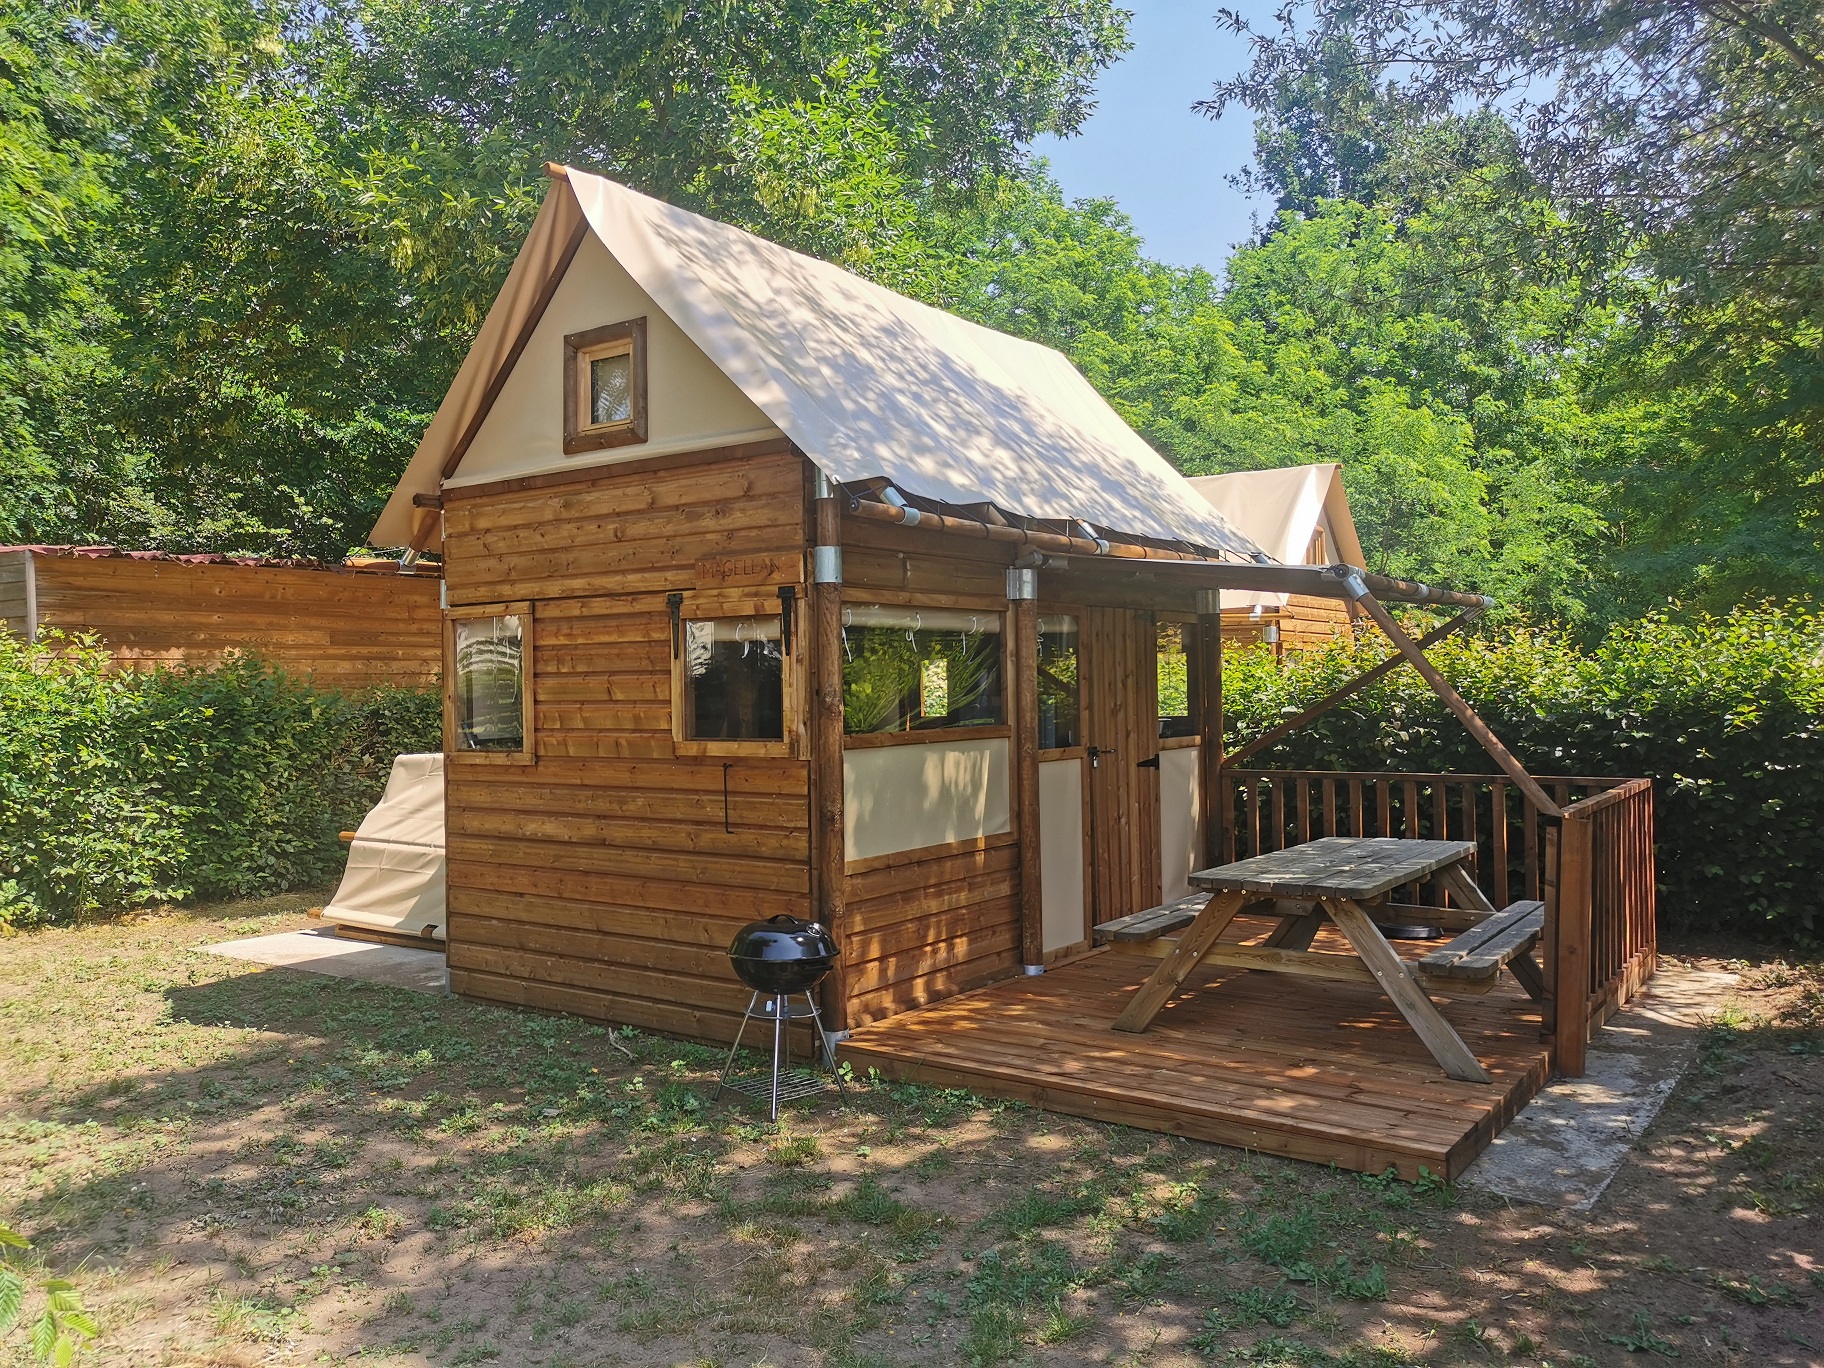 Accommodation - Tente Lodge Pour Cyclistes, Randonneurs - Base de Loisirs - Camping du Lac Cormoranche